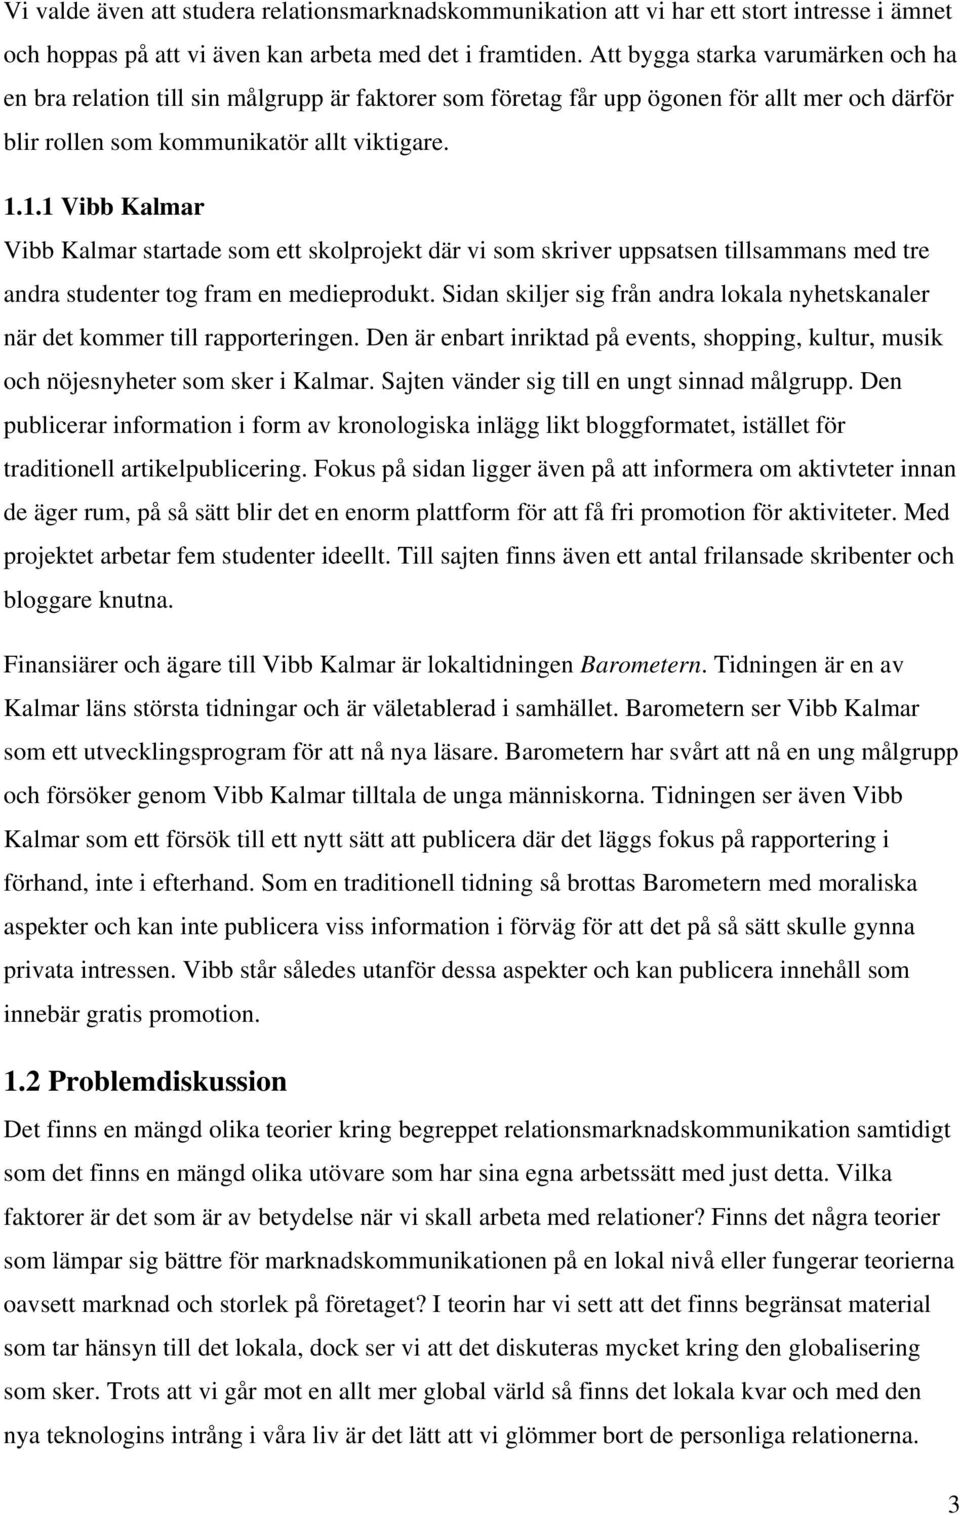 1.1 Vibb Kalmar Vibb Kalmar startade som ett skolprojekt där vi som skriver uppsatsen tillsammans med tre andra studenter tog fram en medieprodukt.